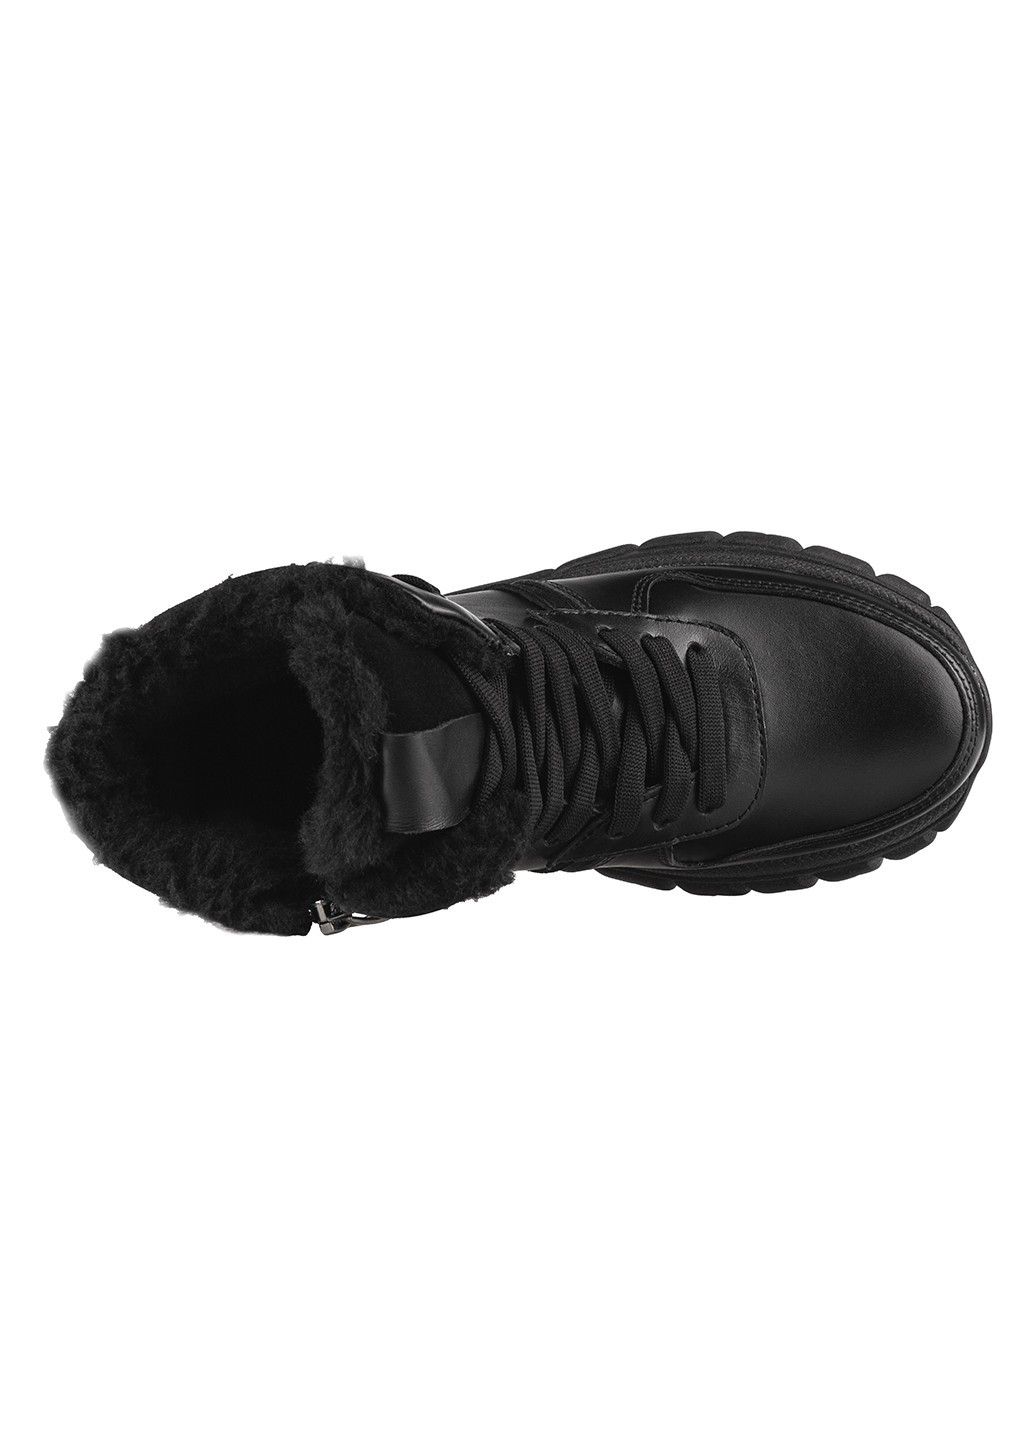 Зимние ботинки Westland со шнуровкой из натуральной замши